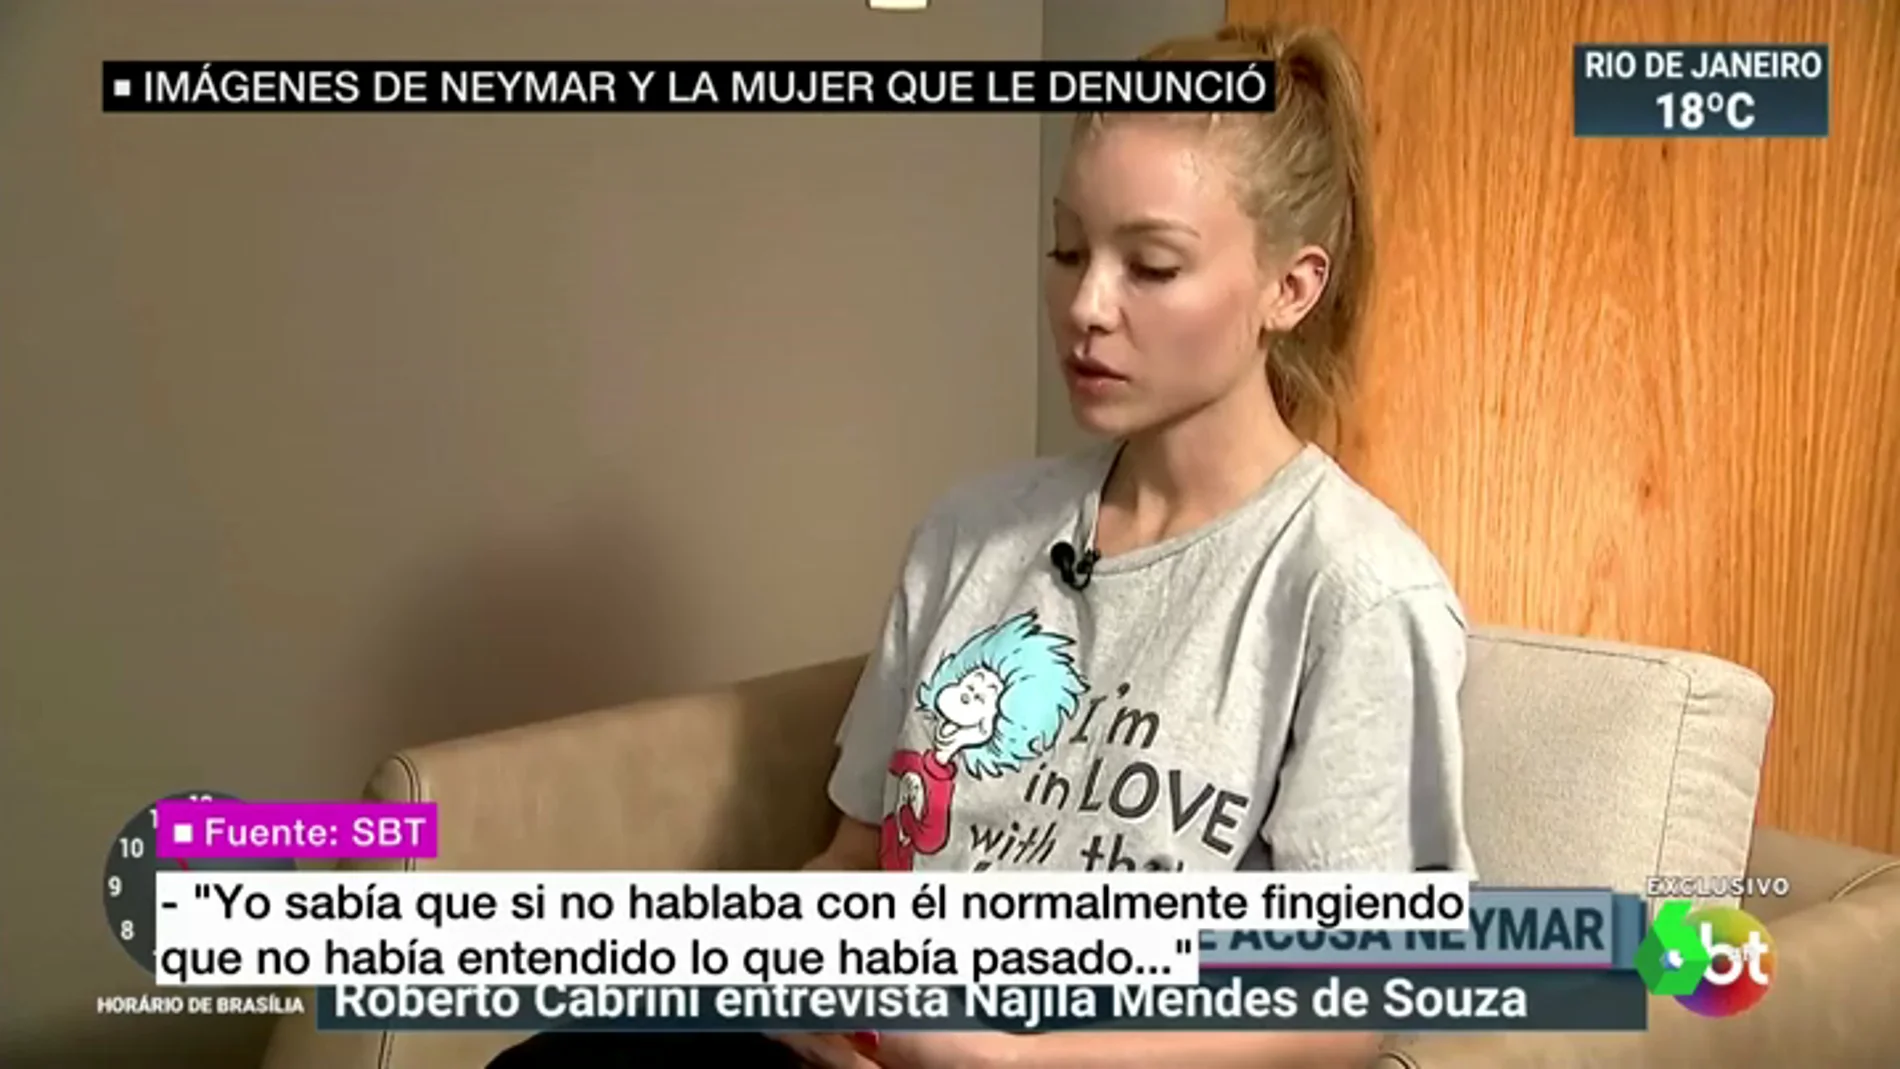 La modelo que denunció a Neymar habla por primera vez: "Fui víctima de agresión y de violación"